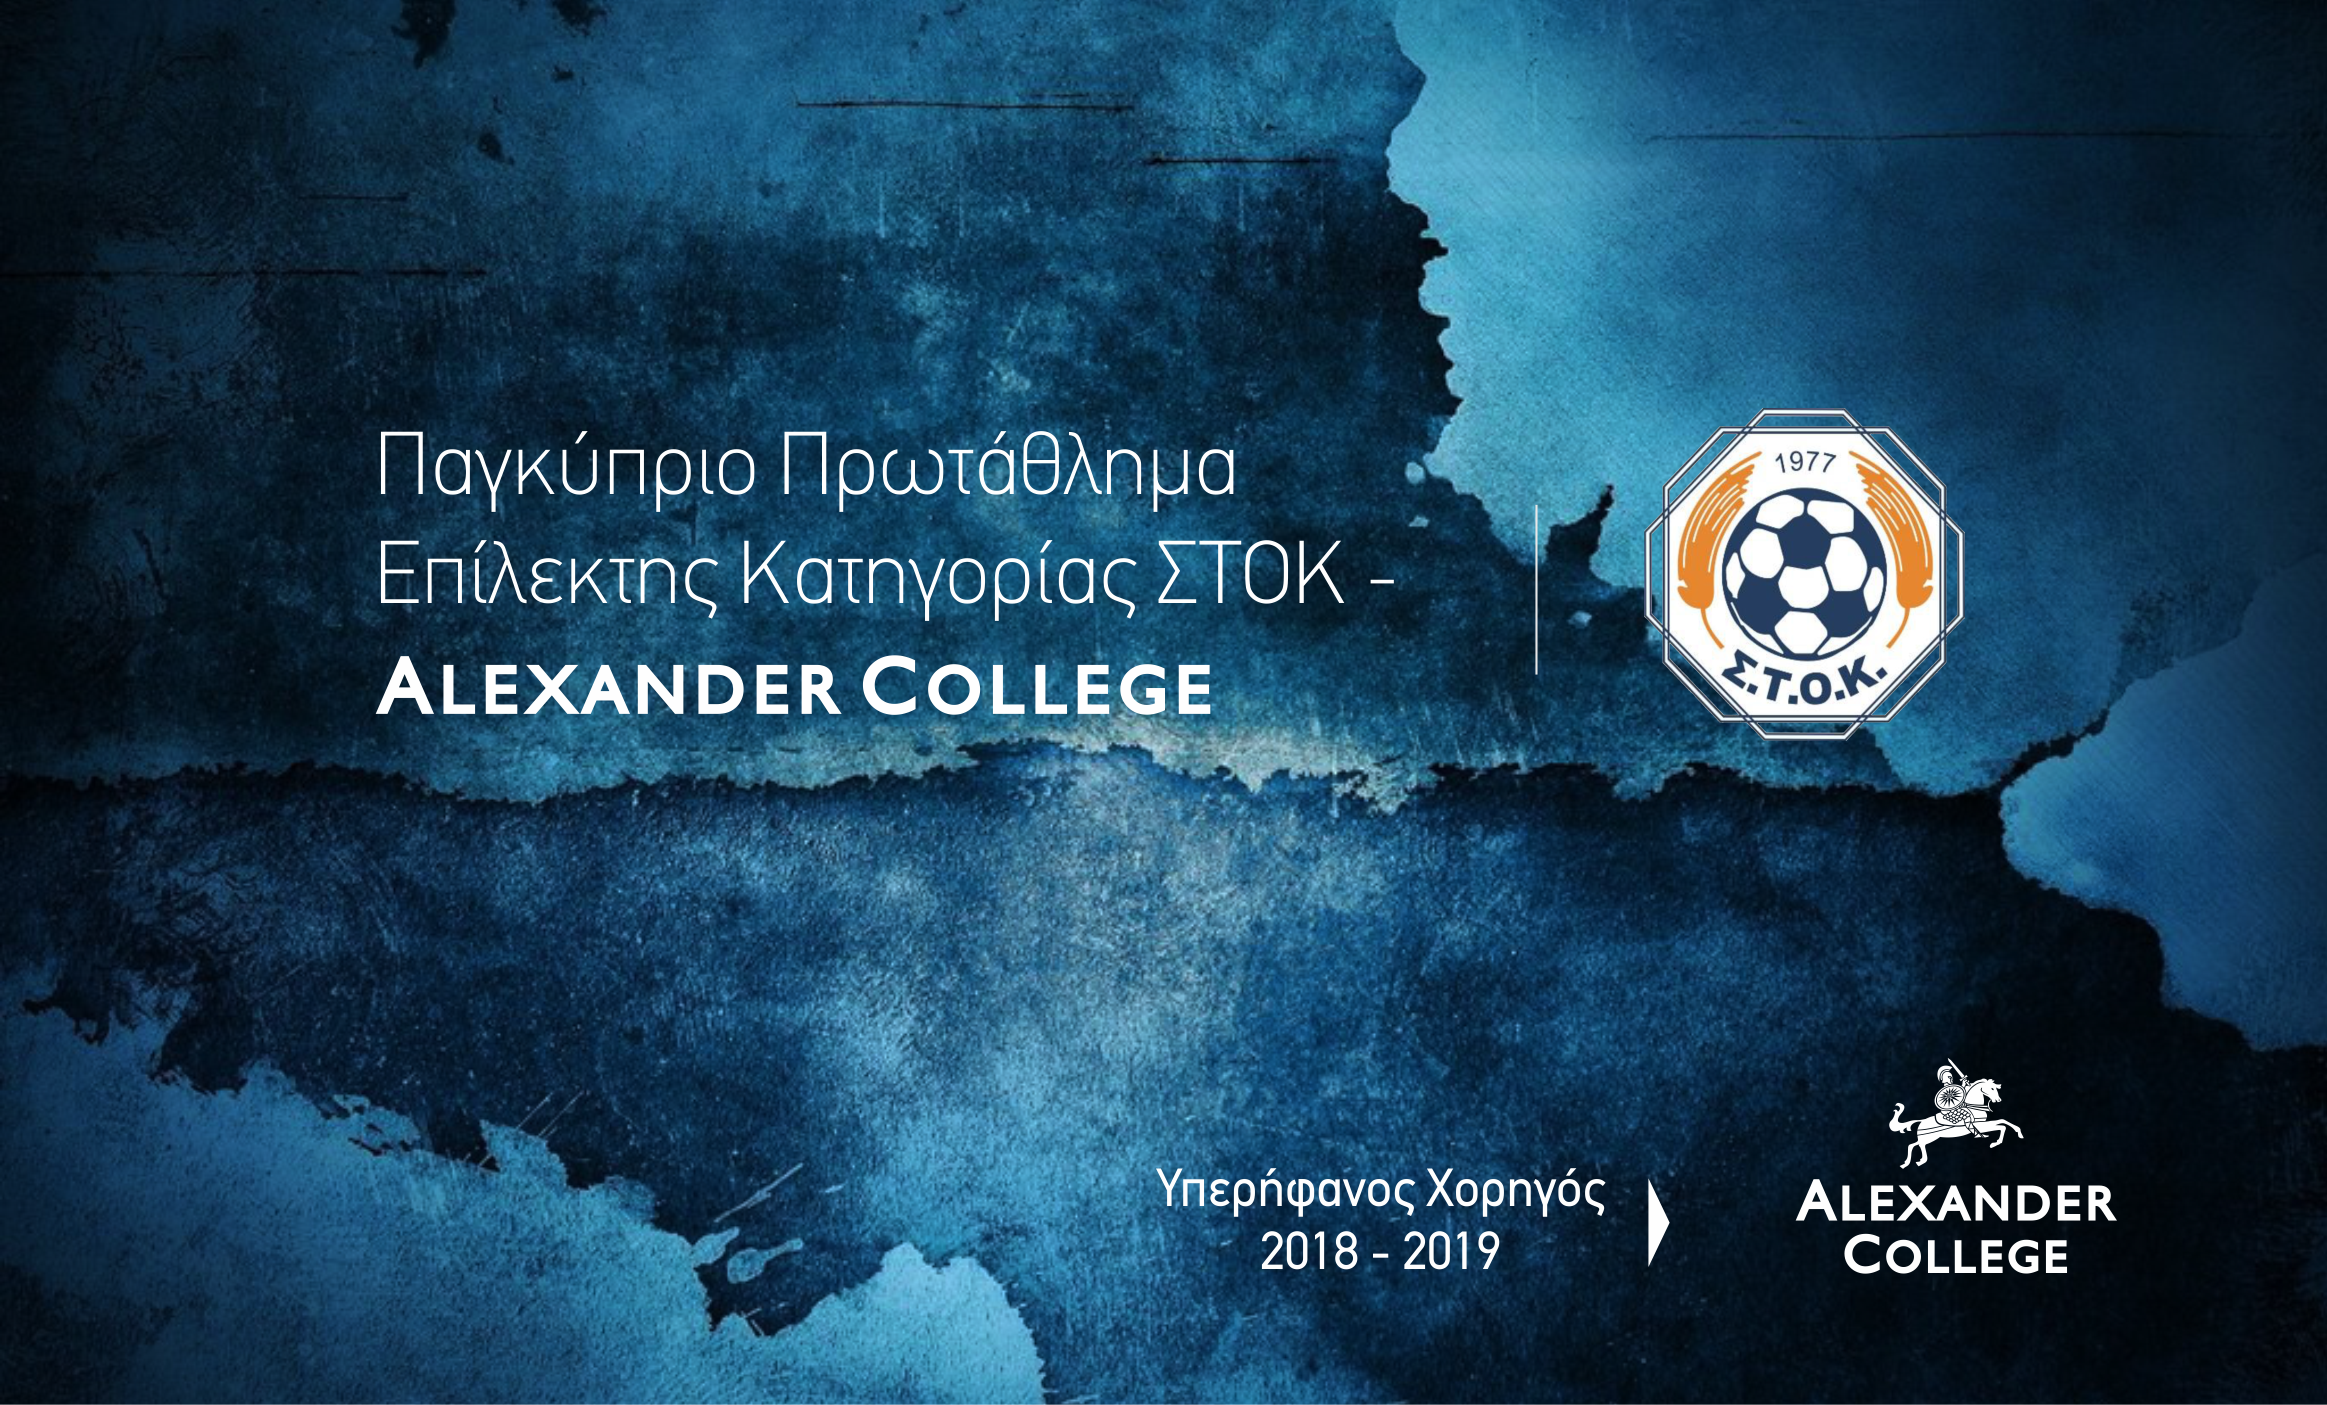 Έναρξη συνεργασίας ανάμεσα στη «Συνομοσπονδία Τοπικών Ομοσπονδιών Κύπρου» και Alexander College